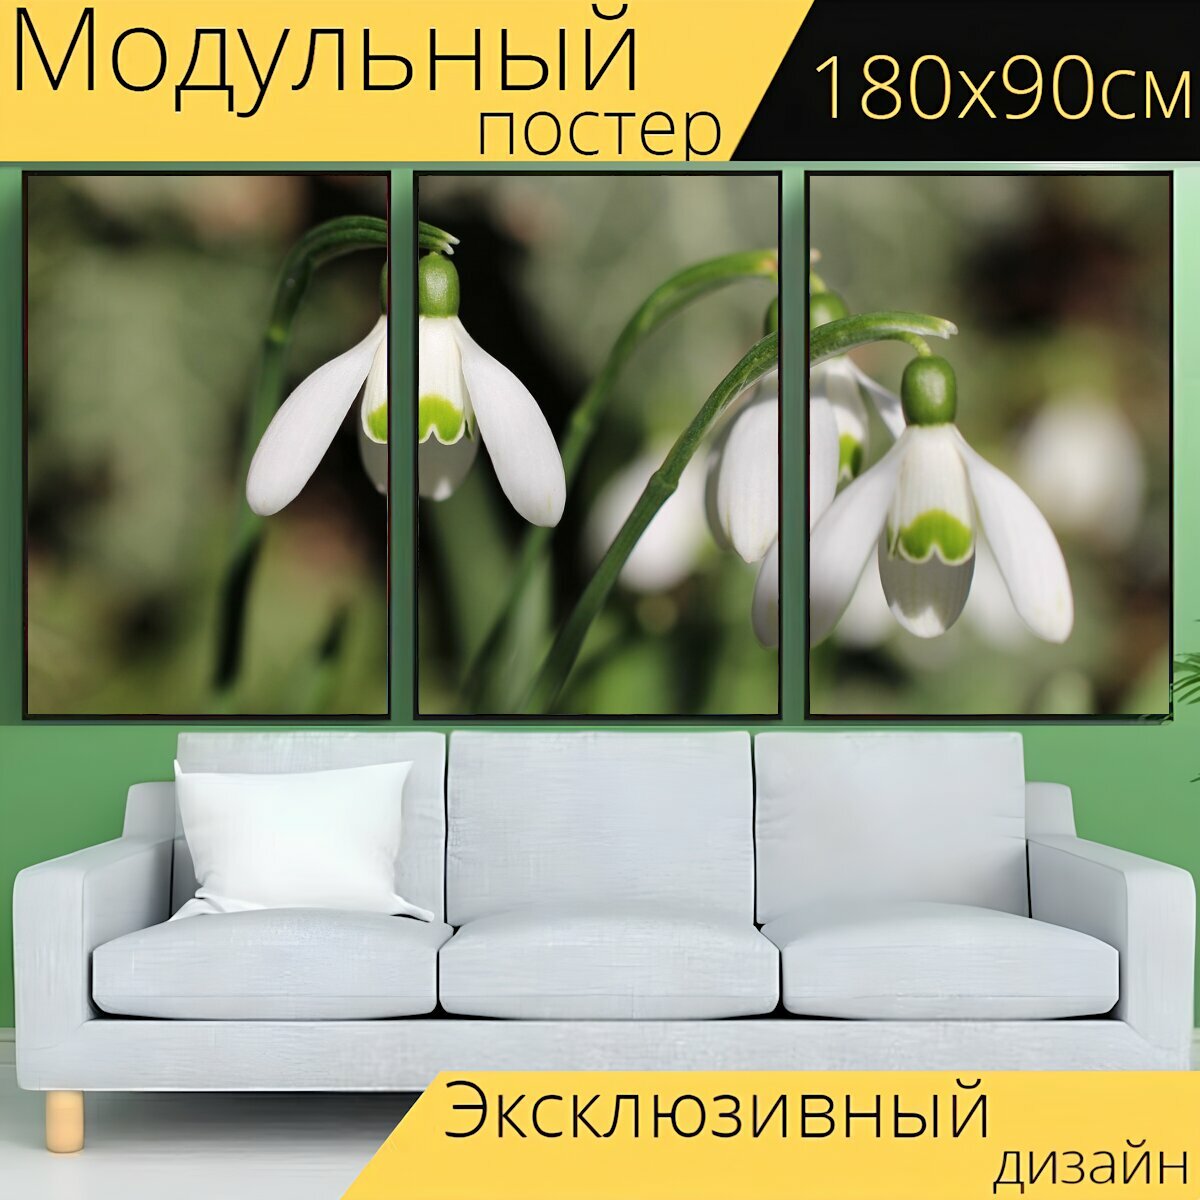 Модульный постер "Три, подснежник, весна" 180 x 90 см. для интерьера